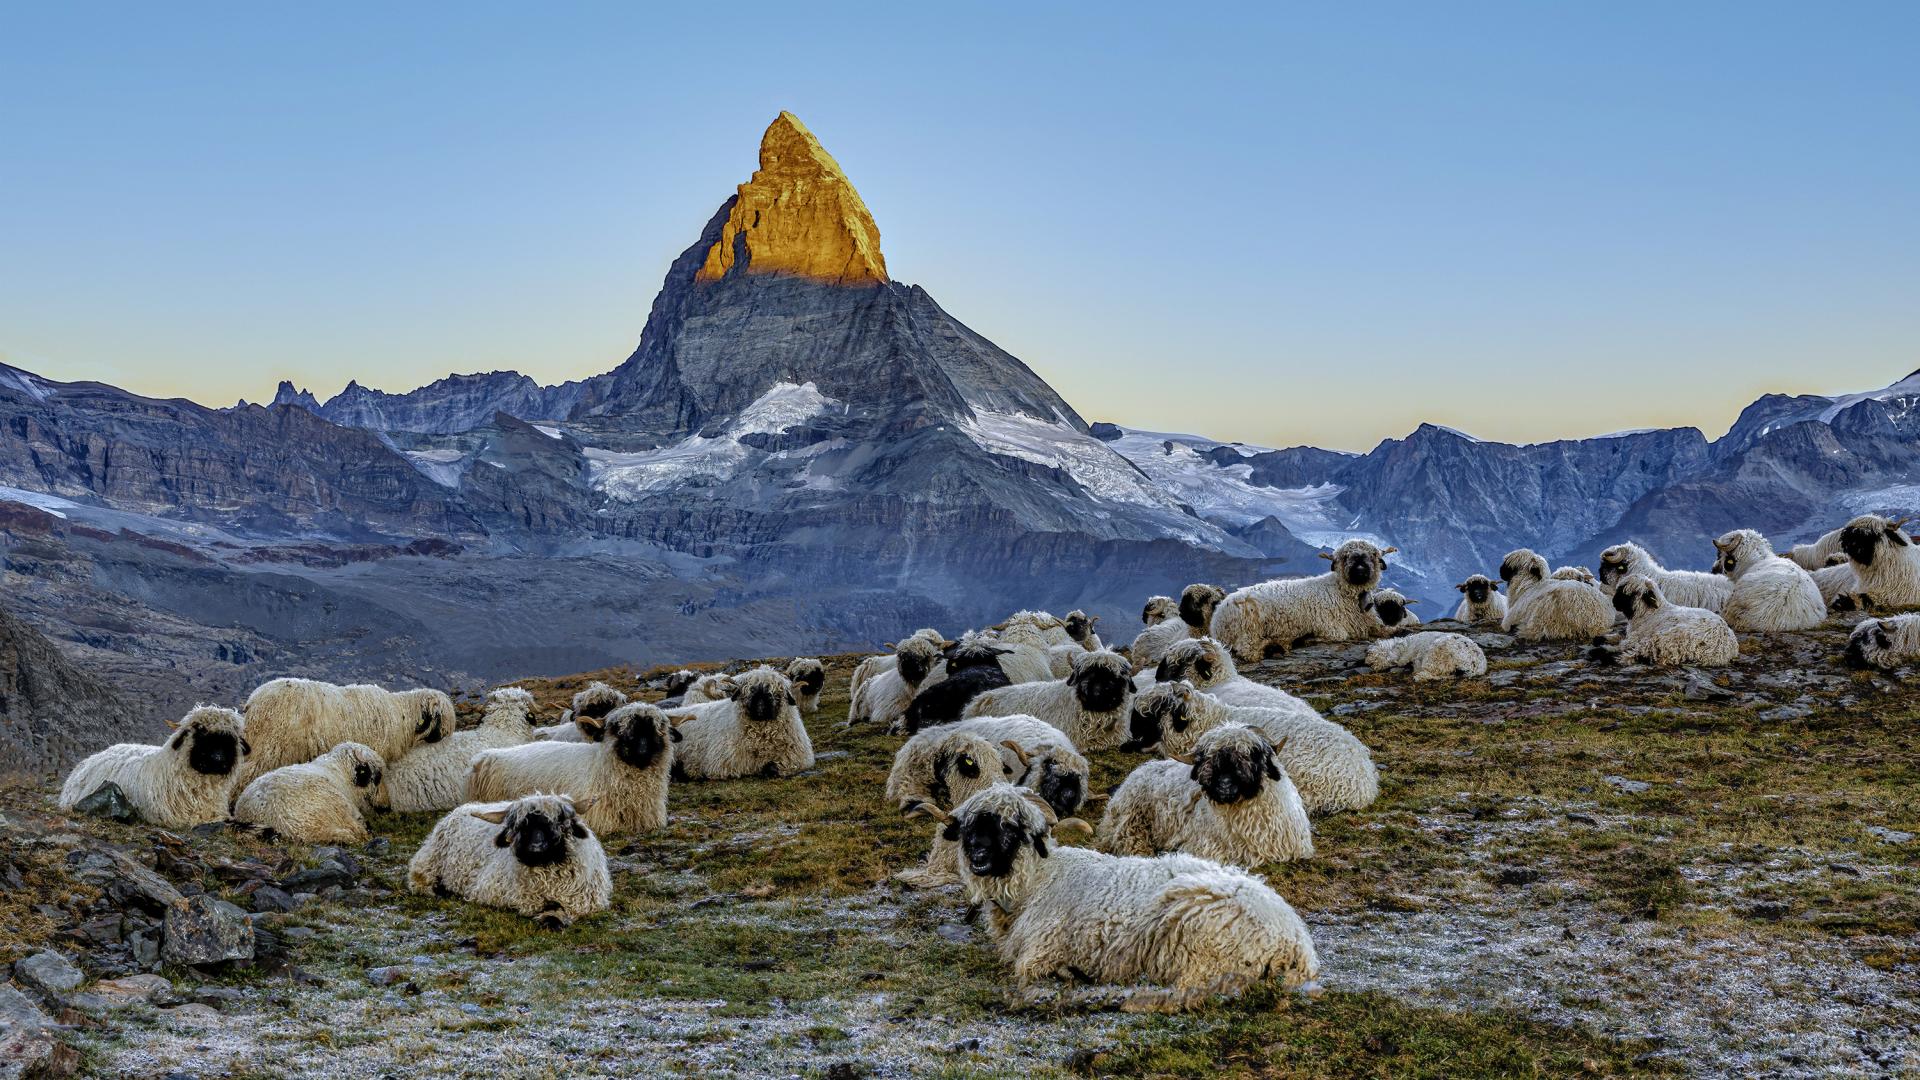 London Photography Awards Winner - Meet the Sheep at the Matterhorn